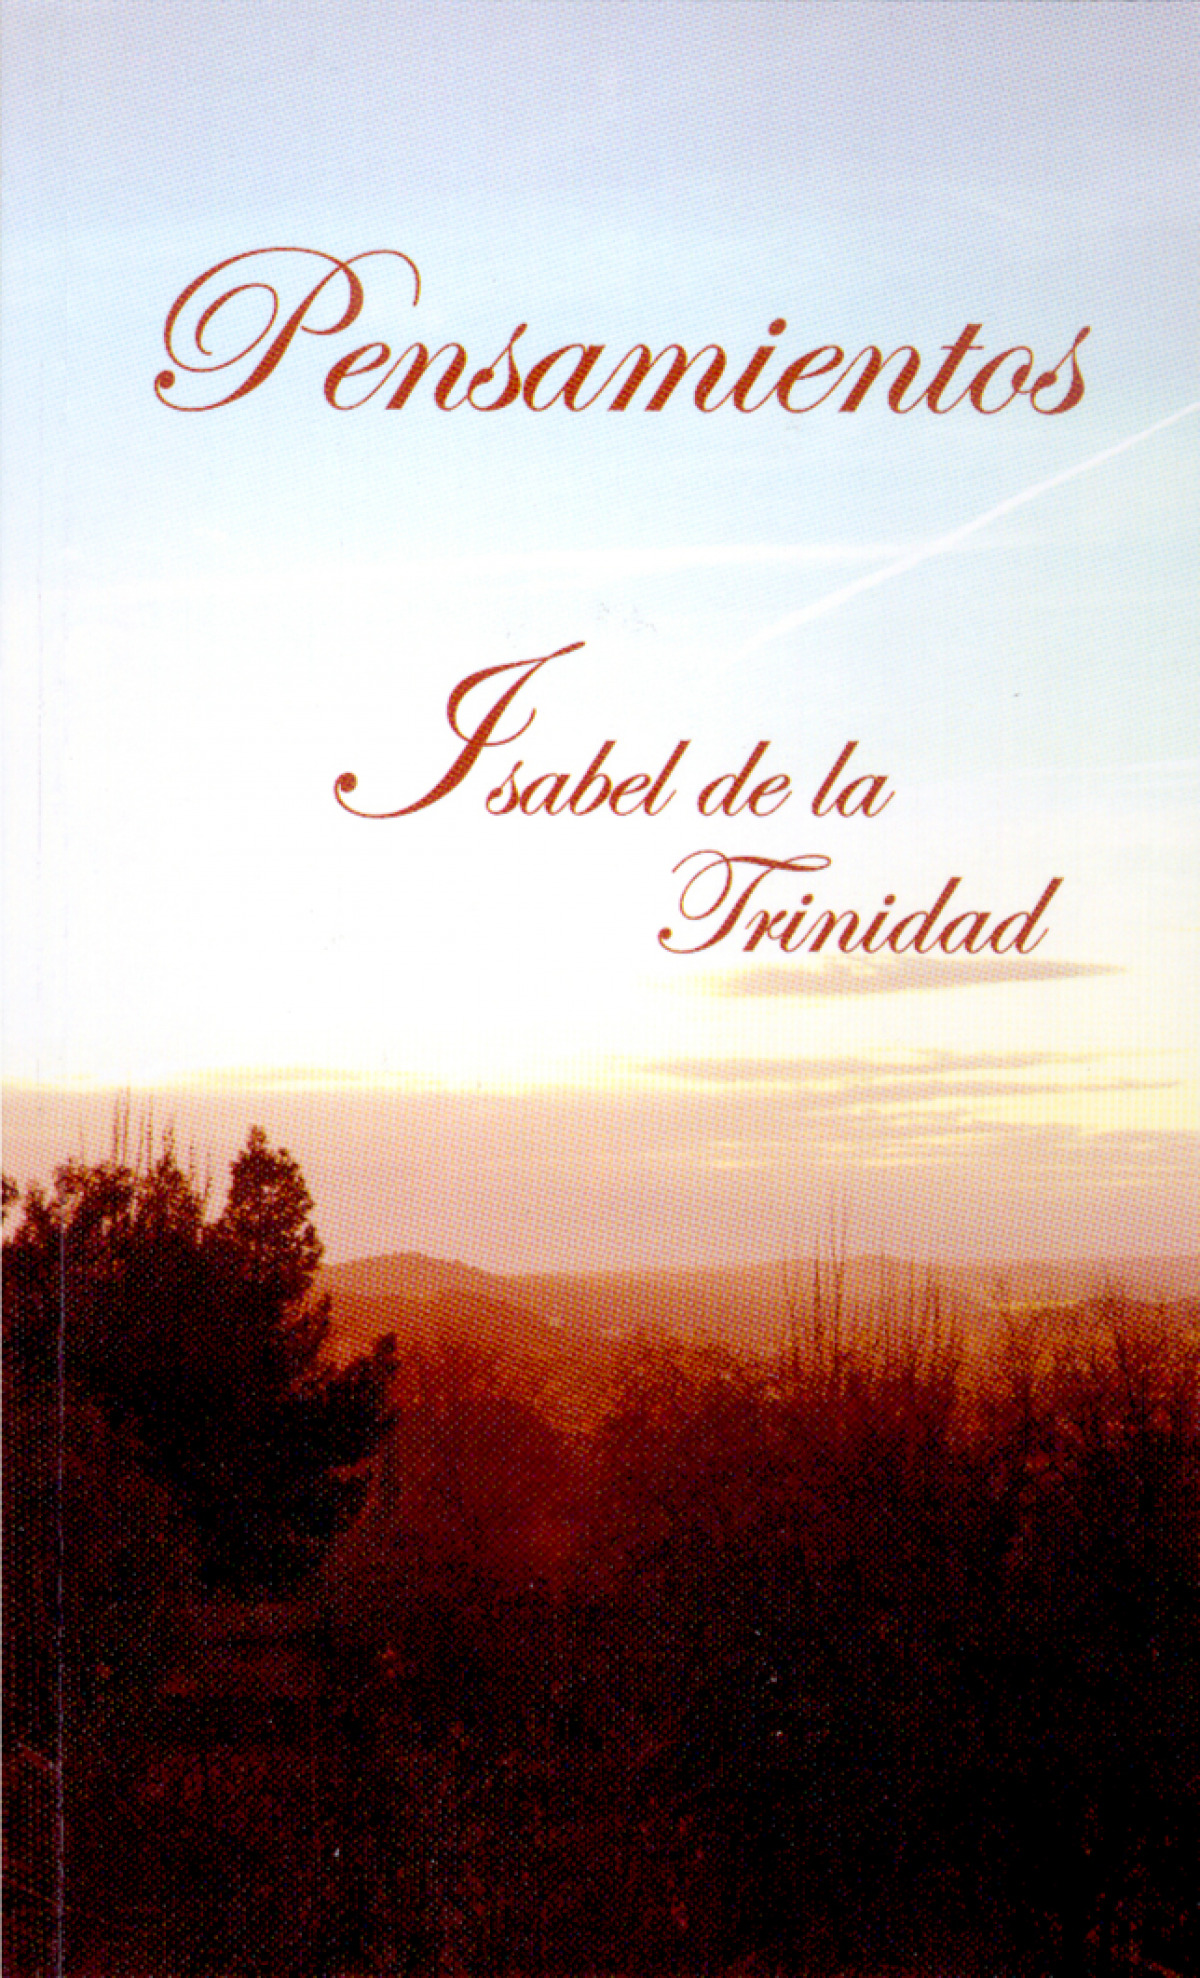 Pensamientos isabel de la trinidad - Isabel De La Trinidad